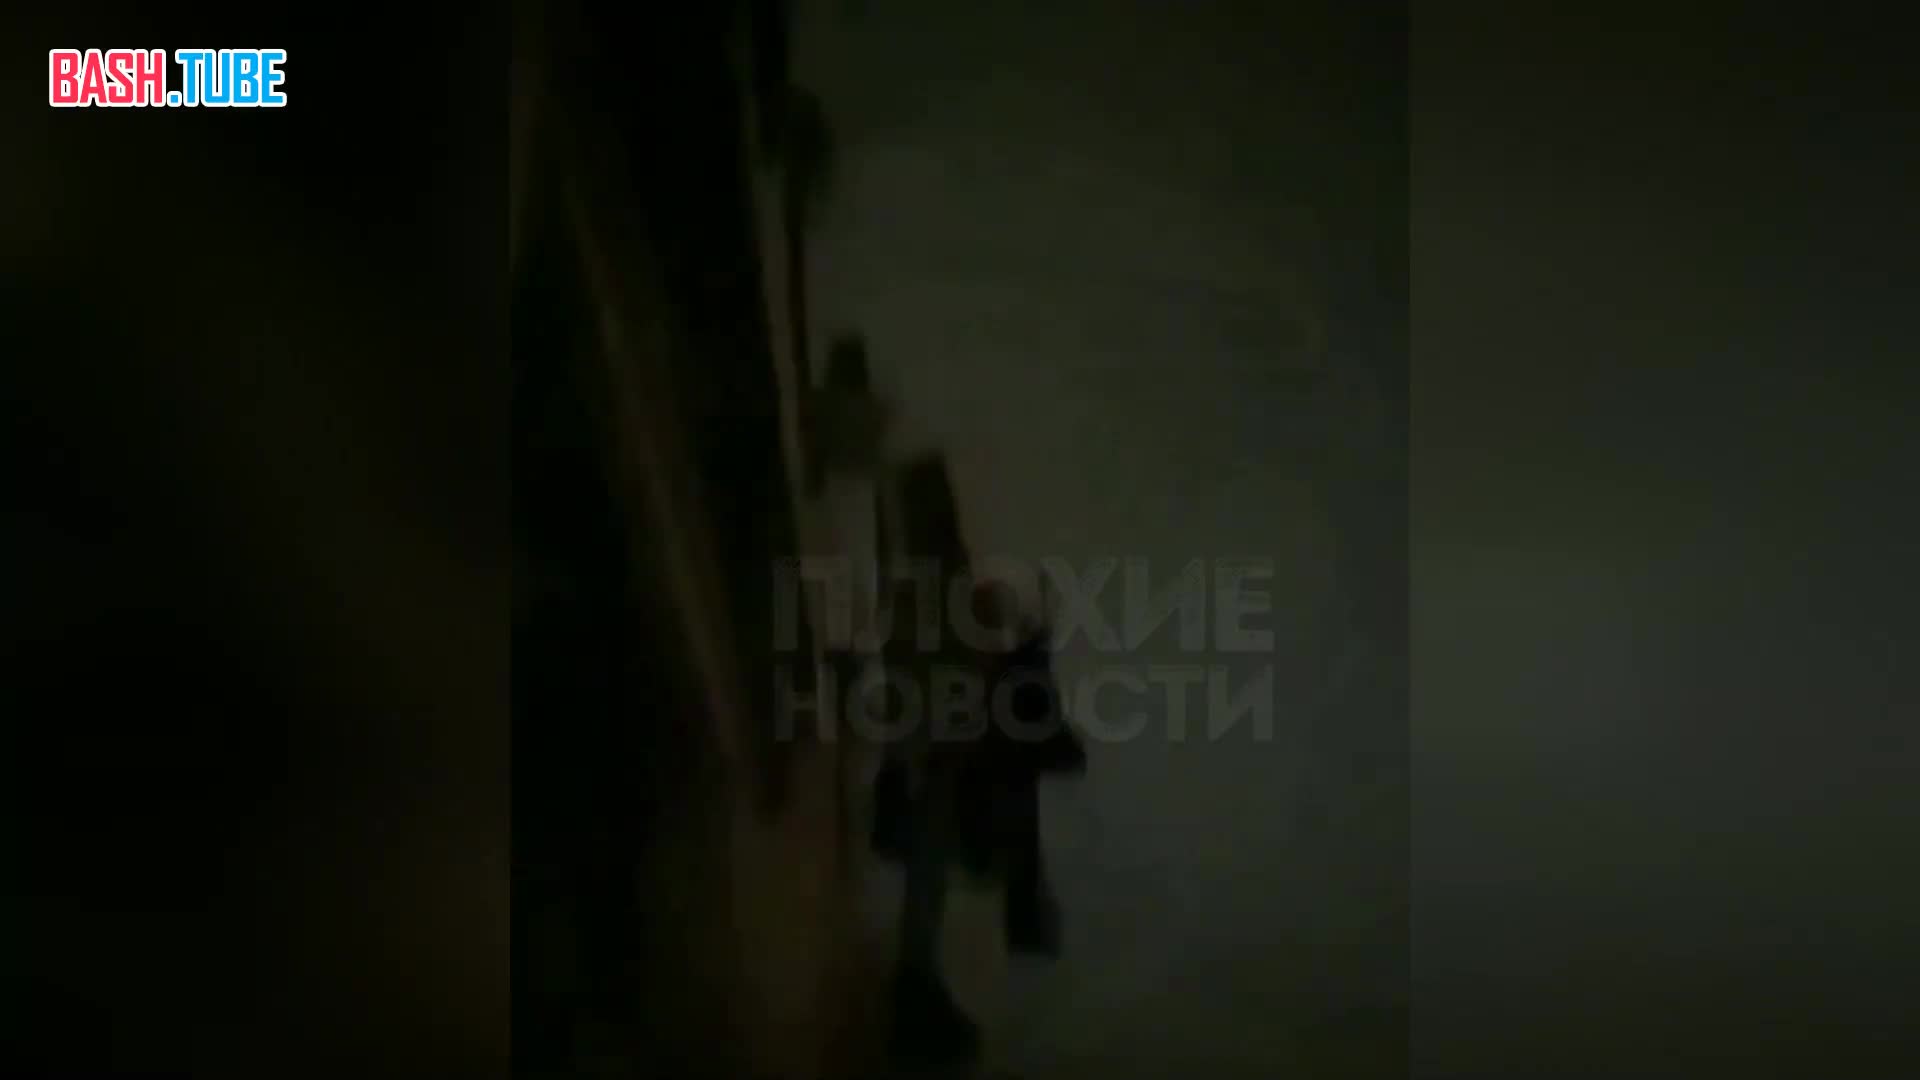  Во Владивостоке пьяный мужчина упал с 9 этажа